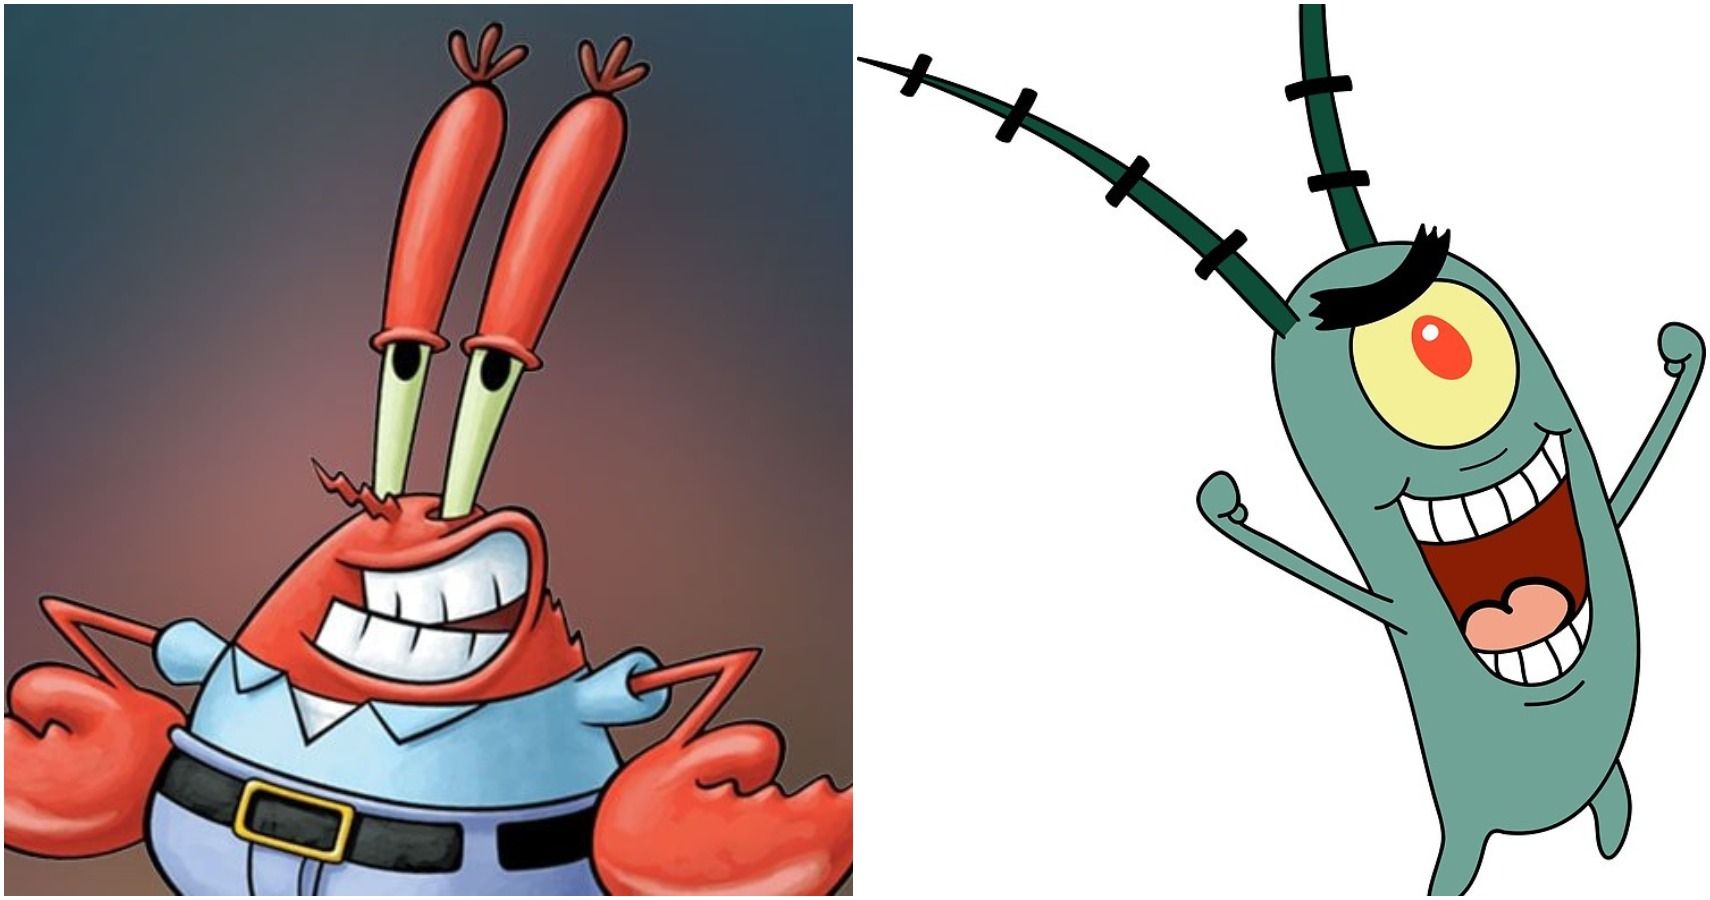 plankton spongebob